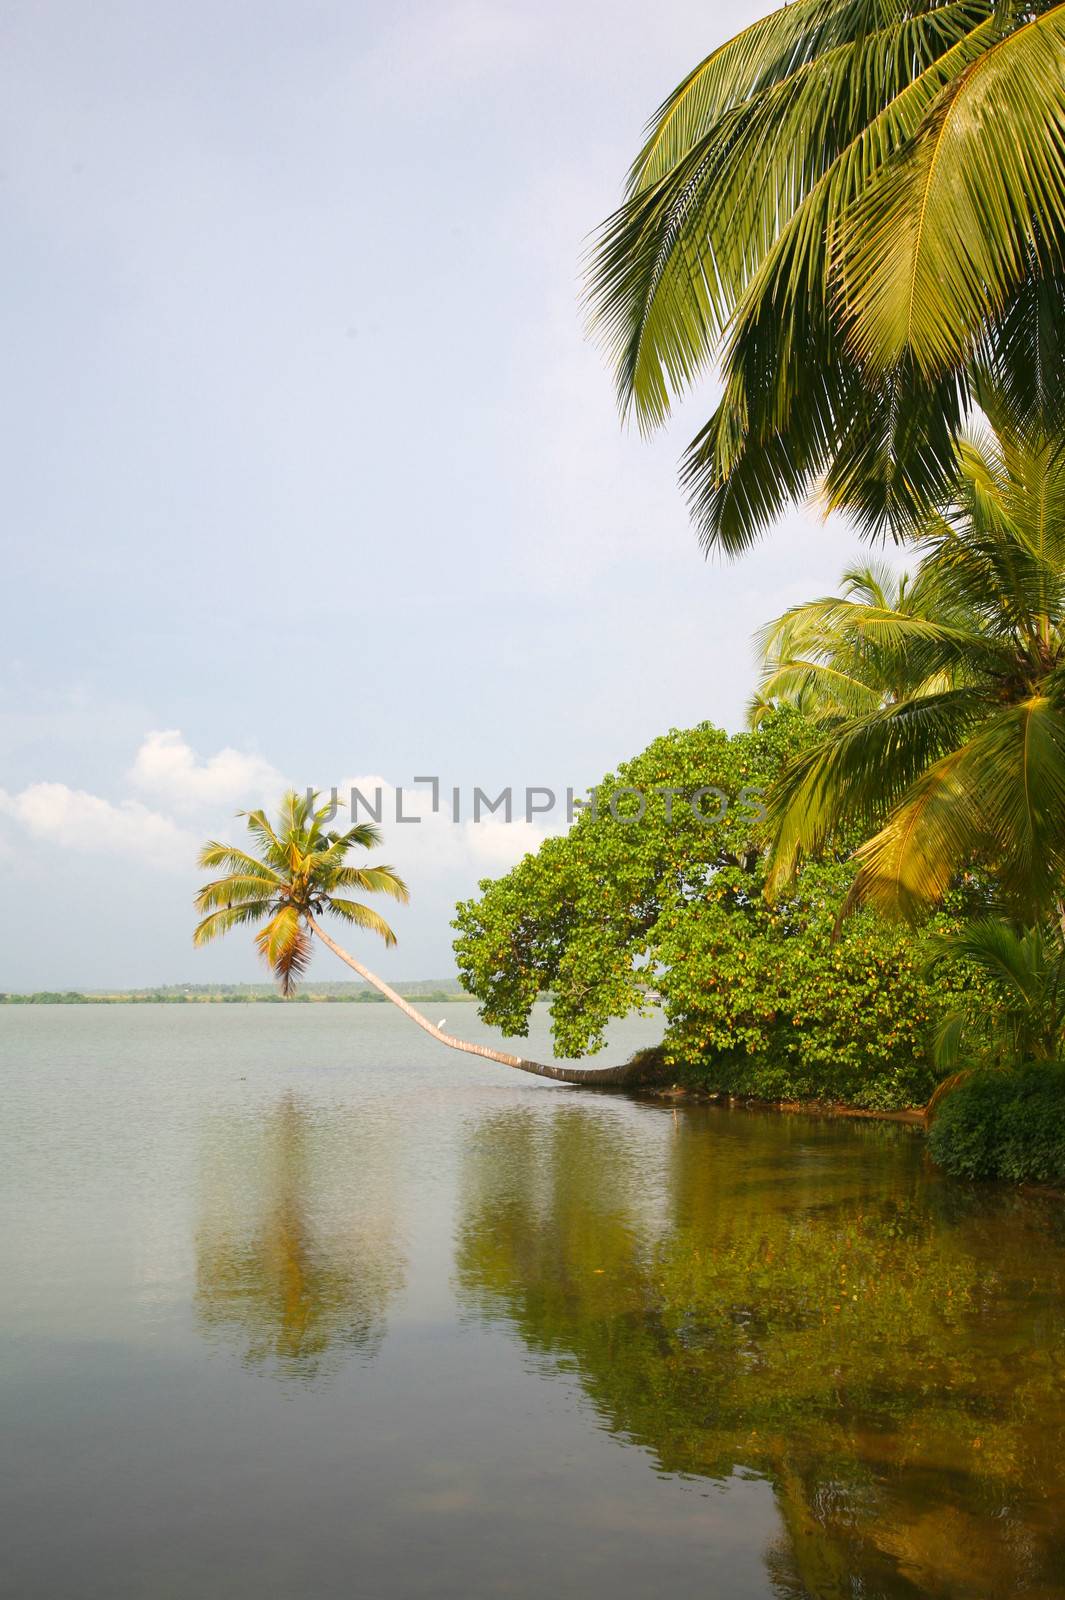 Back Waters in Kerala